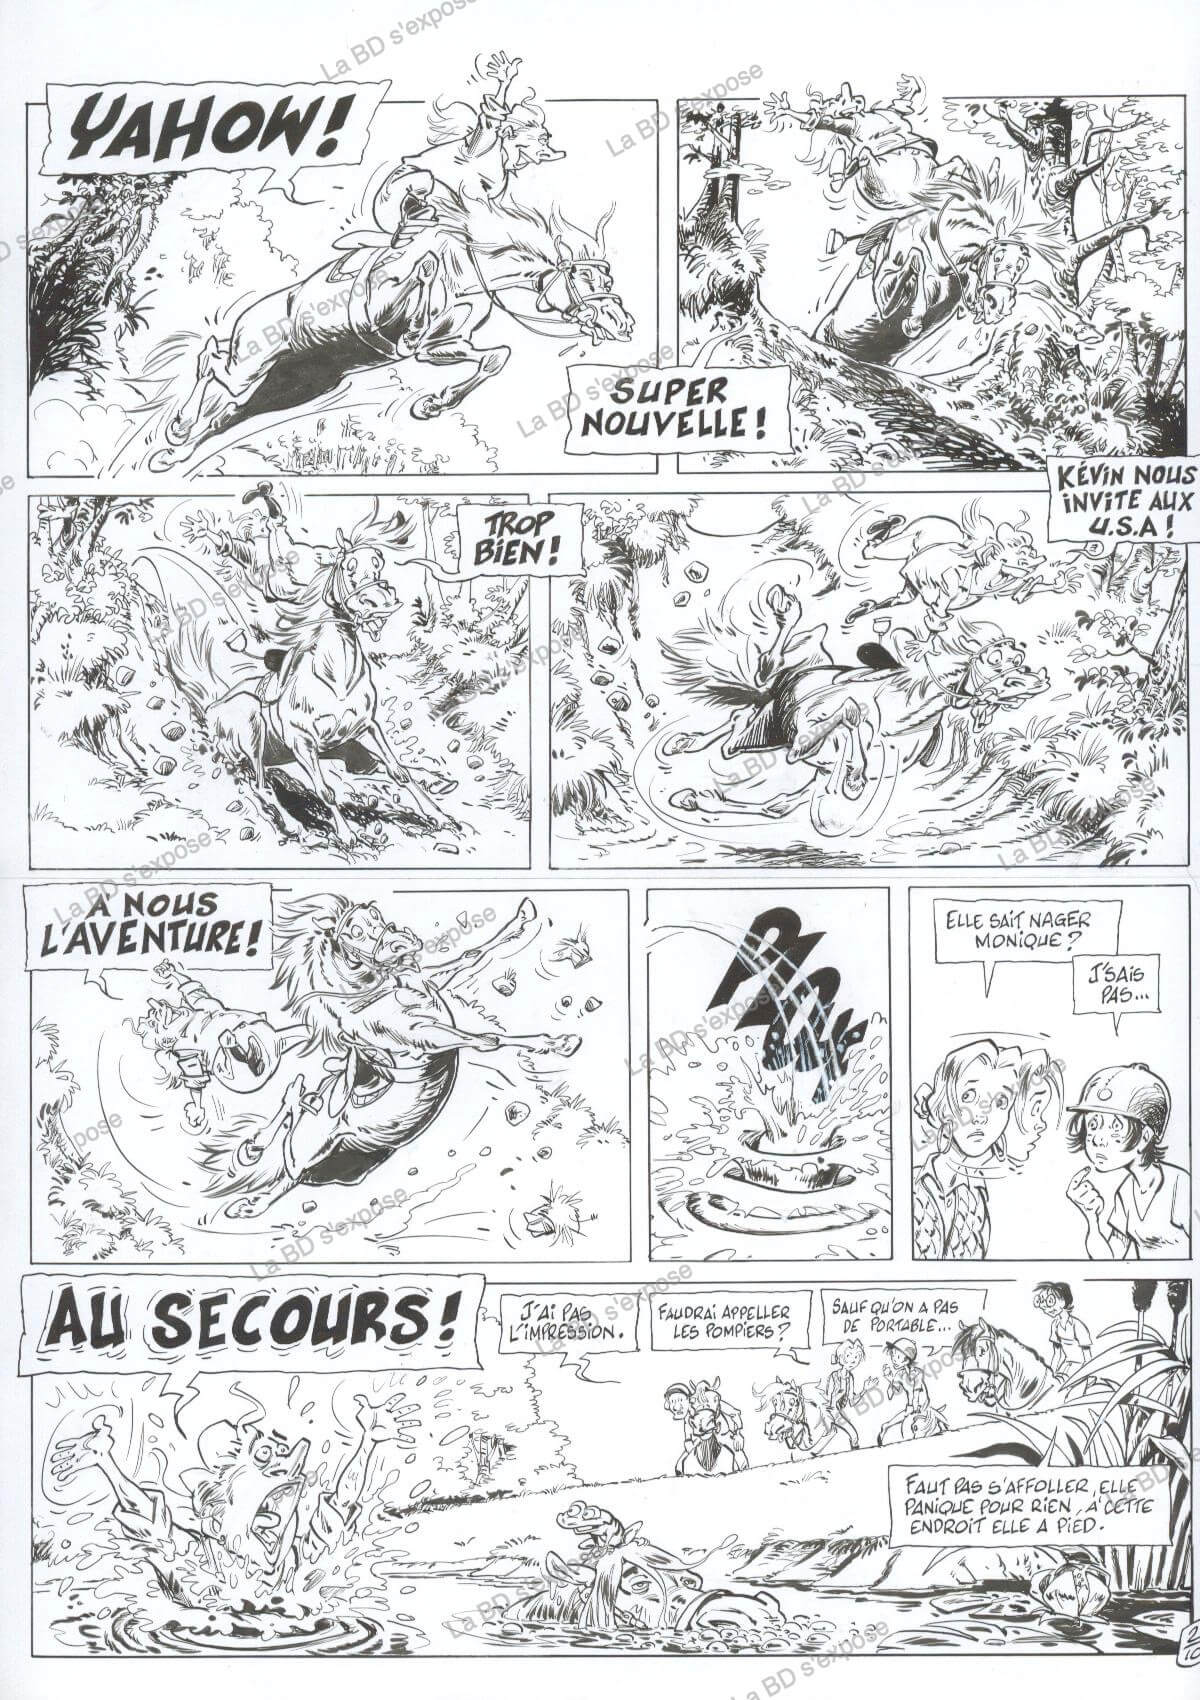 Planche originale de bandes dessinees Triple Galop Tome 10 P2 Benoit Du peloux La BD s'expose